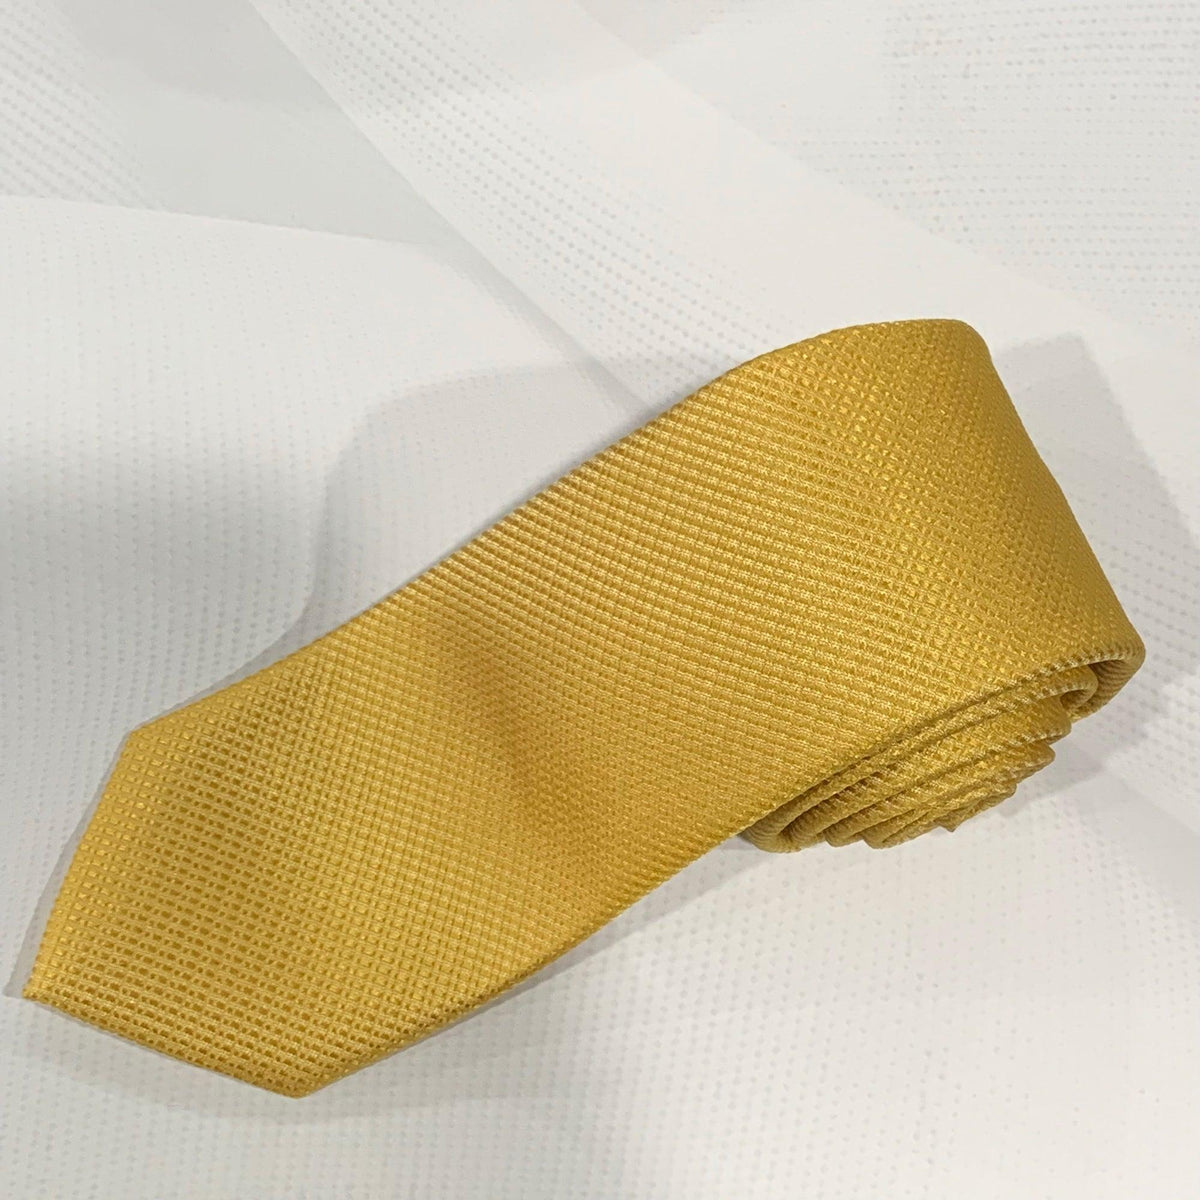 X19055-5 Silk Tie - Harrys for Menswear